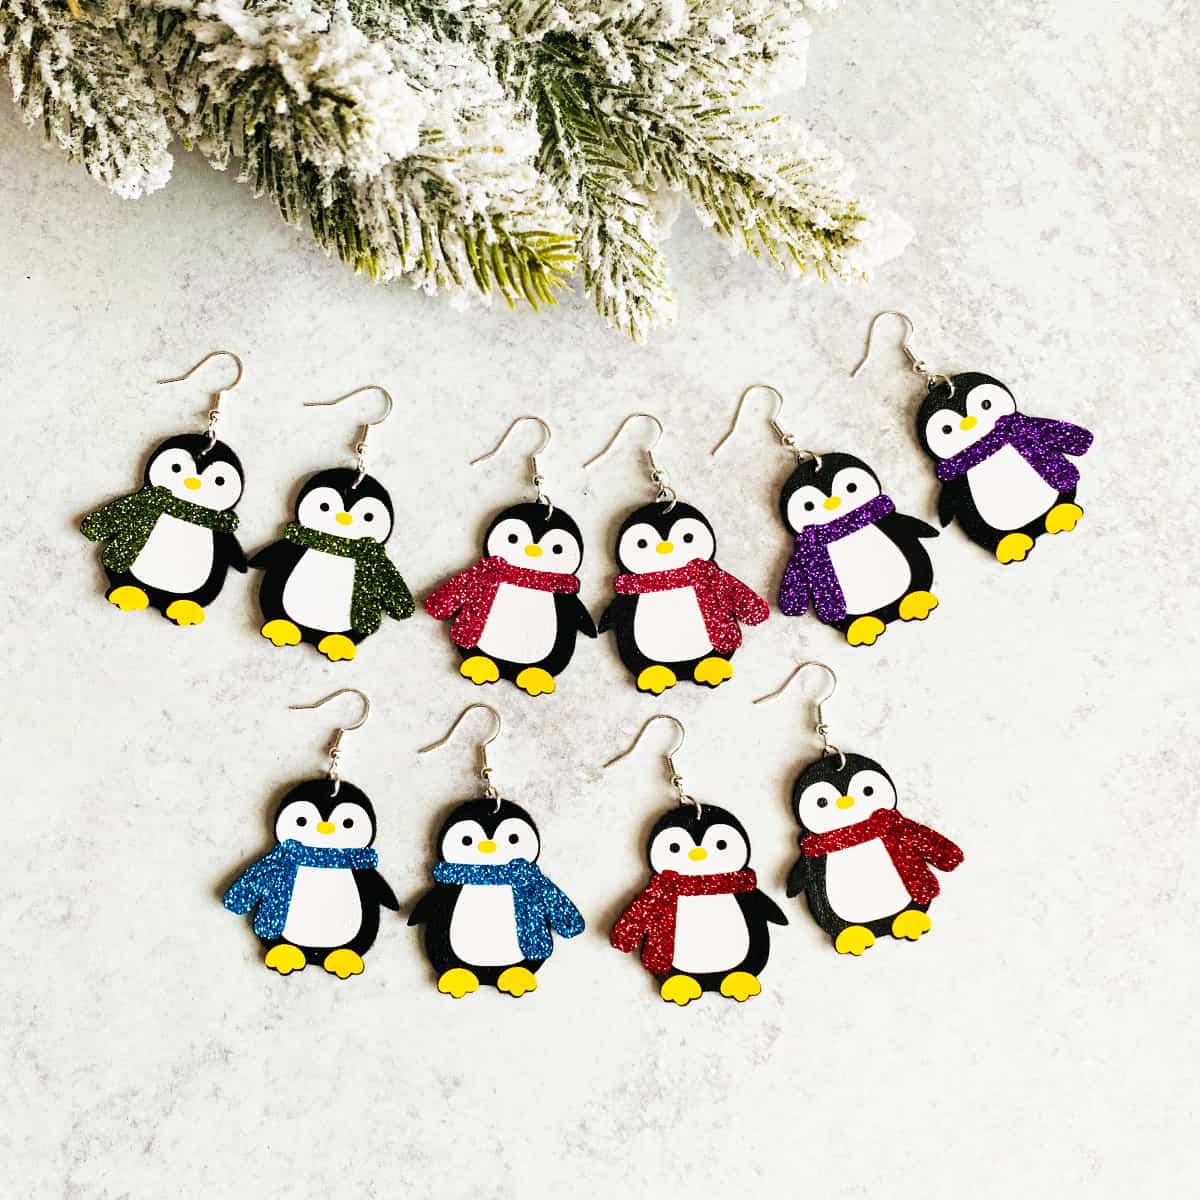 How to Make Penguin Earrings